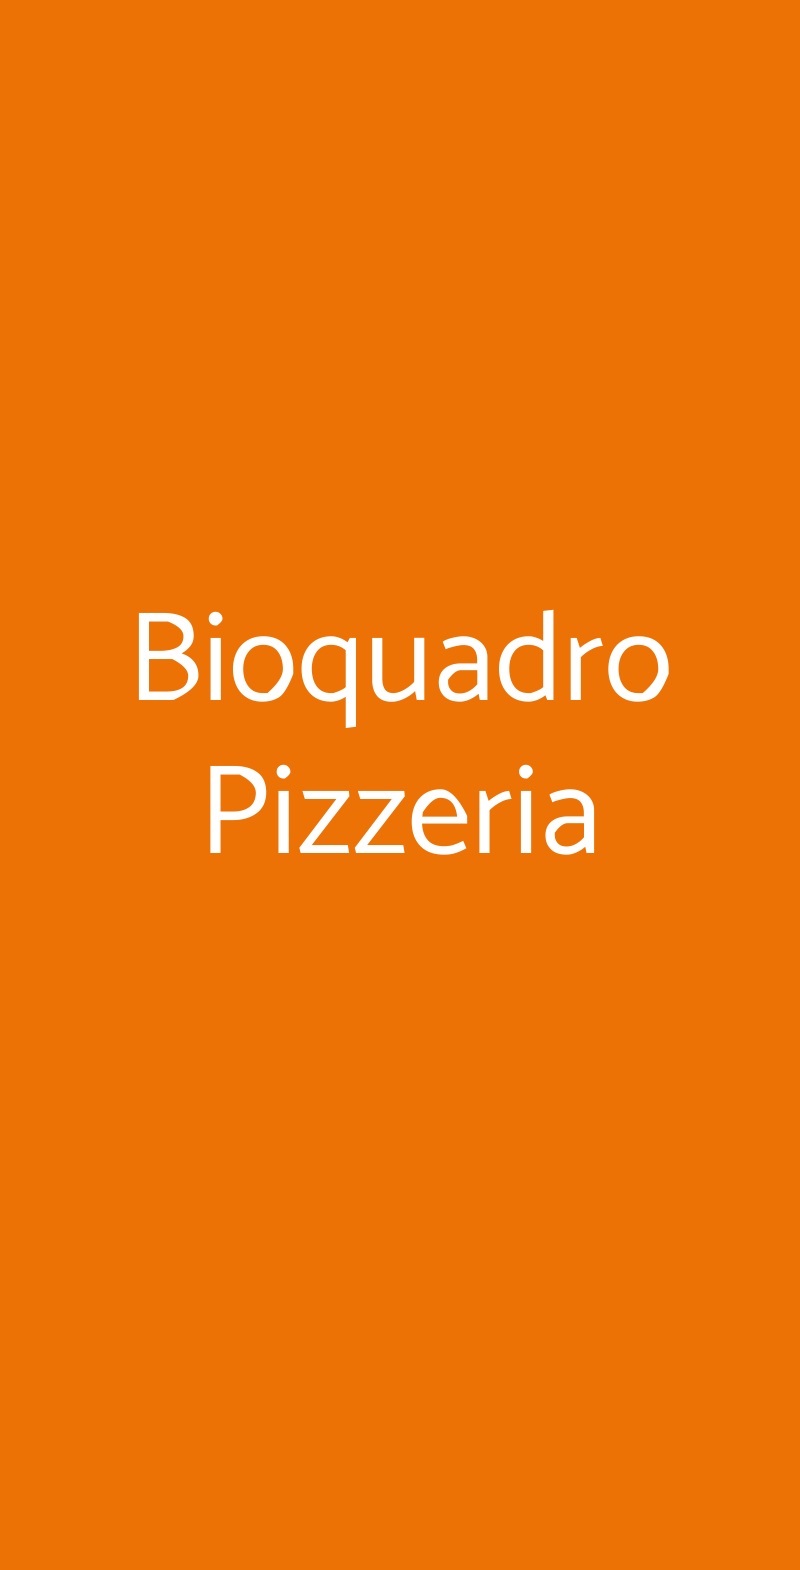 Bioquadro Pizzeria Roma menù 1 pagina